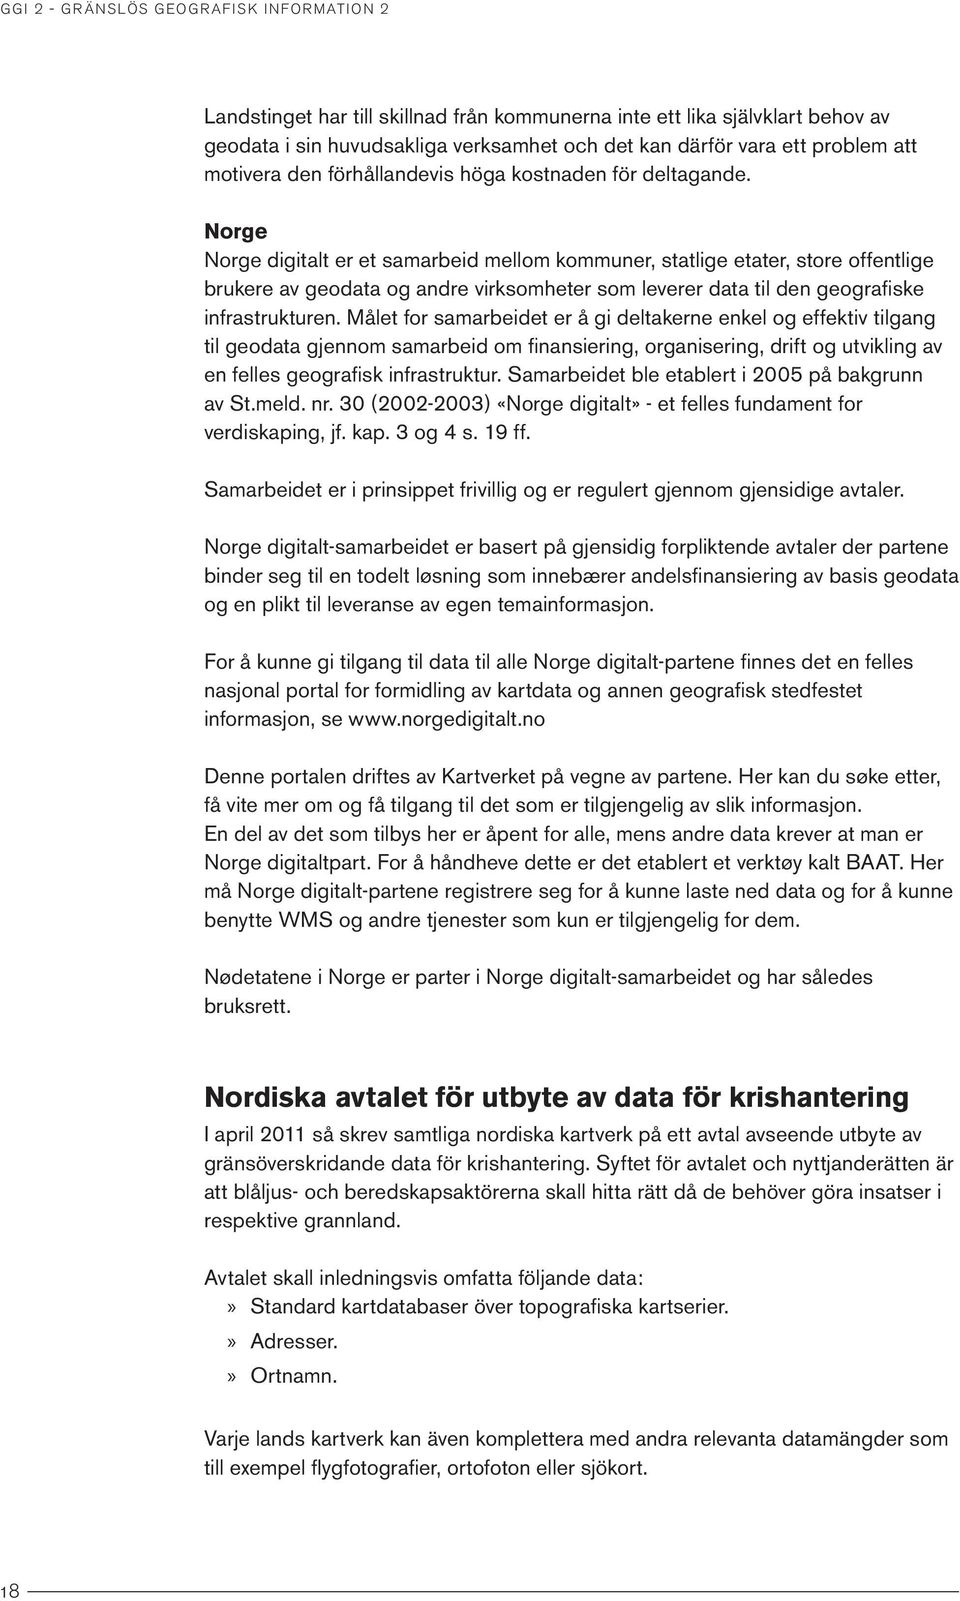 Norge Norge digitalt er et samarbeid mellom kommuner, statlige etater, store offentlige brukere av geodata og andre virksomheter som leverer data til den geografiske infrastrukturen.